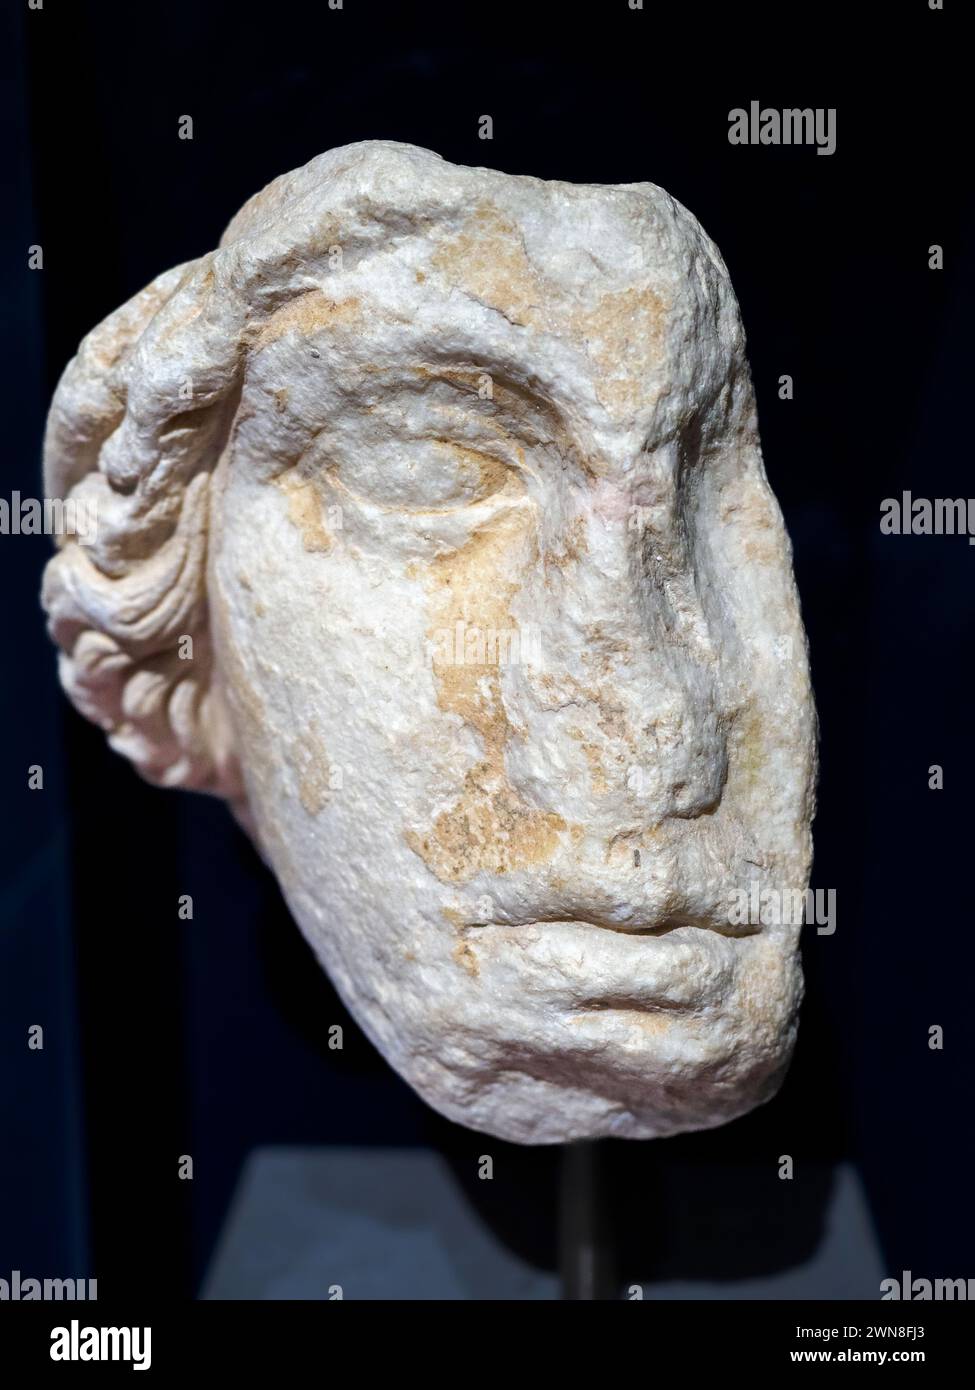 Leiter der Athena aus dem Donarium der Athener in Delphi - Parischer Marmor 2. Jahrhundert n. Chr. - Acropoli Museum, Athen, Griechenland Stockfoto